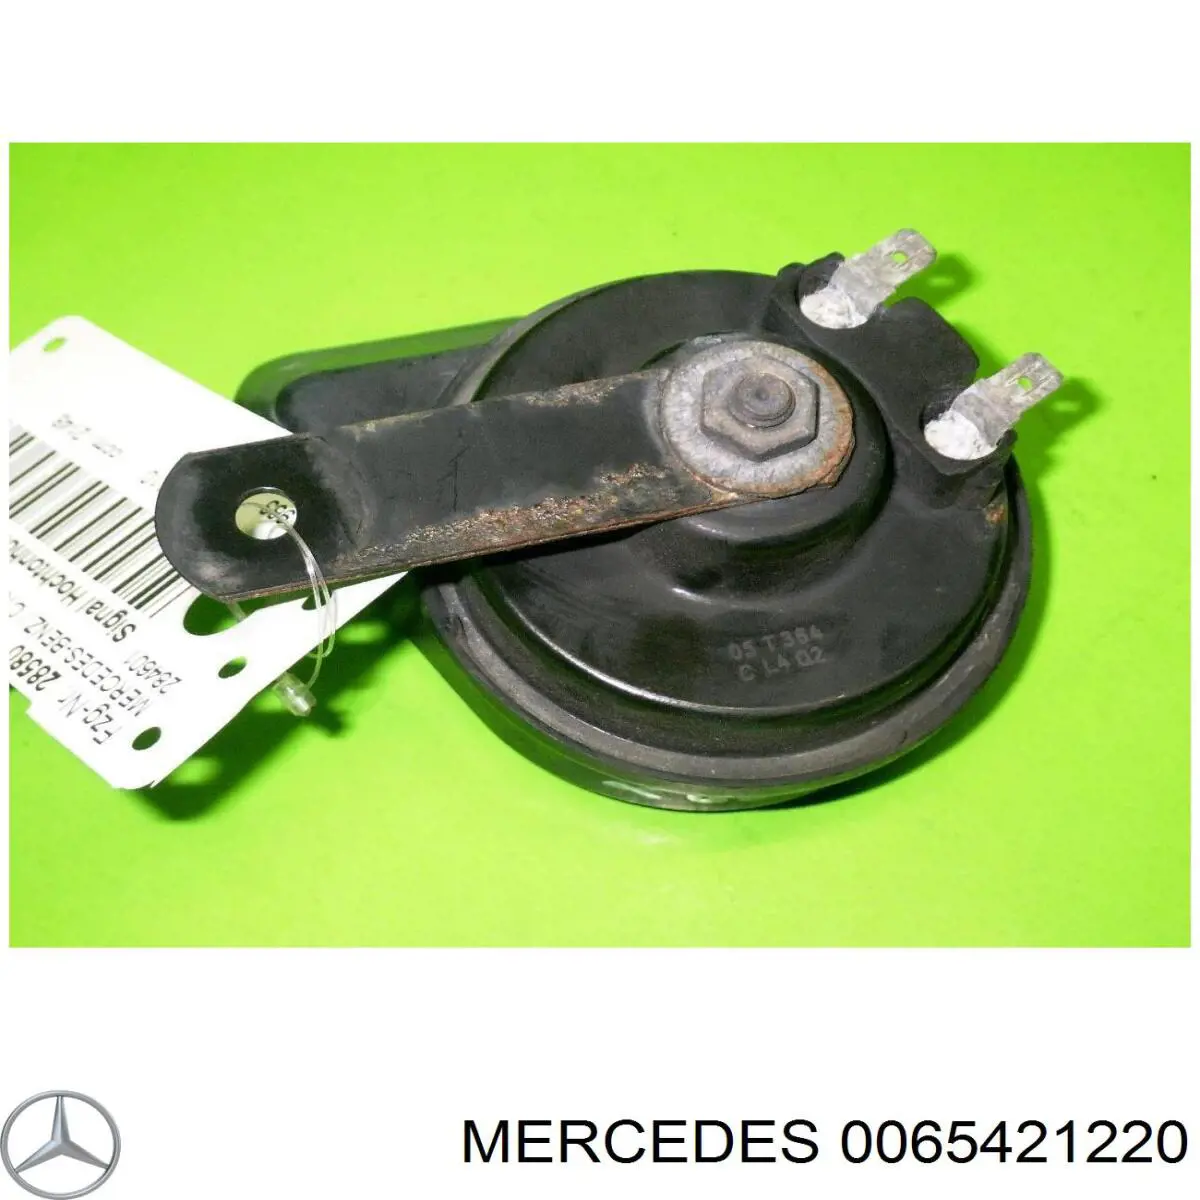 A0065421220 Mercedes bocina